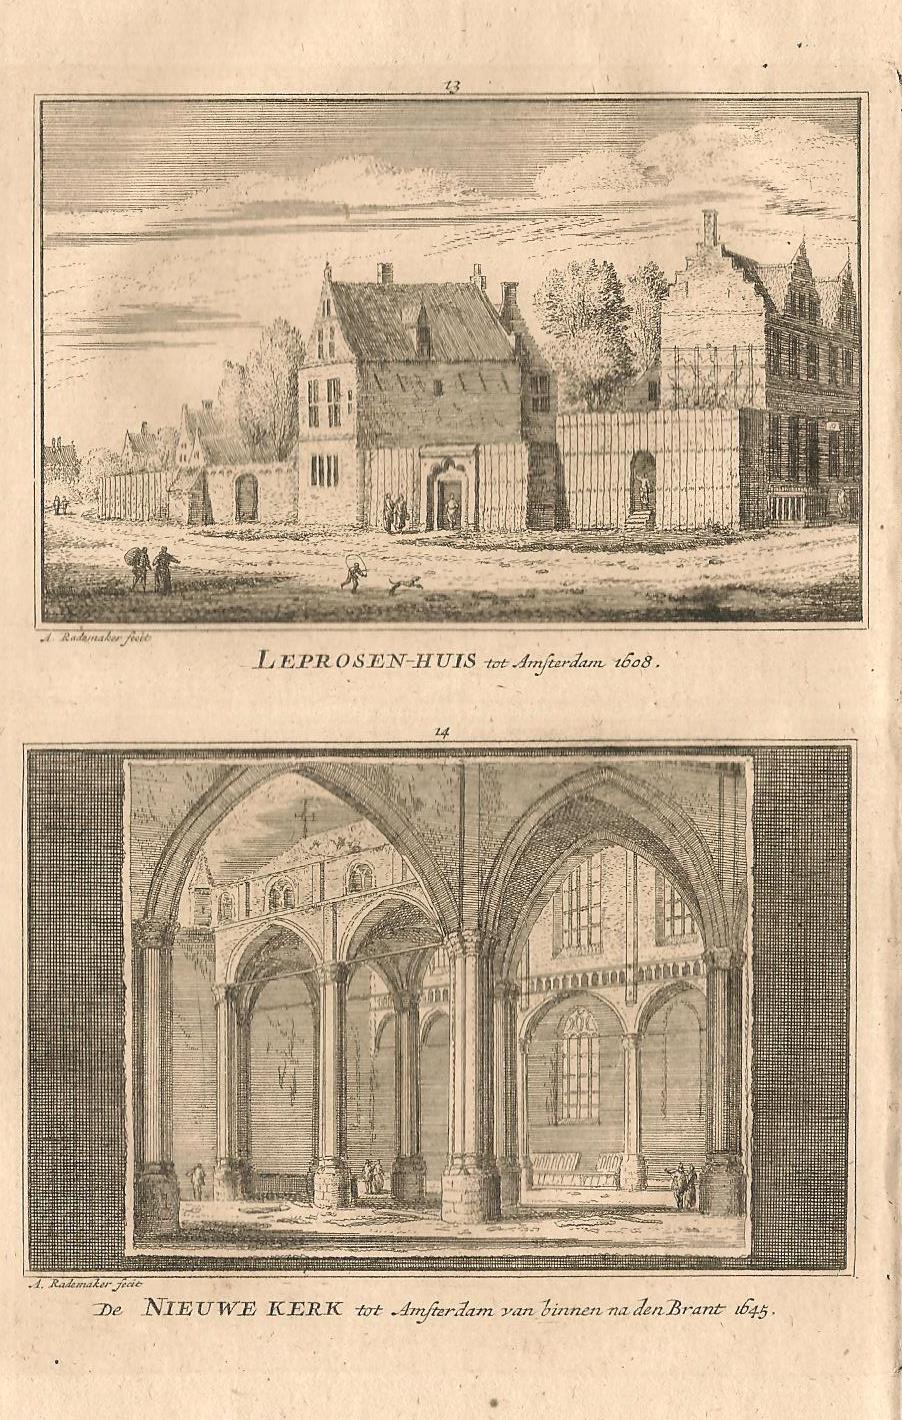 Amsterdam Leprozenhuis en Nieuwe kerk - A Rademaker / JA Crajenschot, - 1792